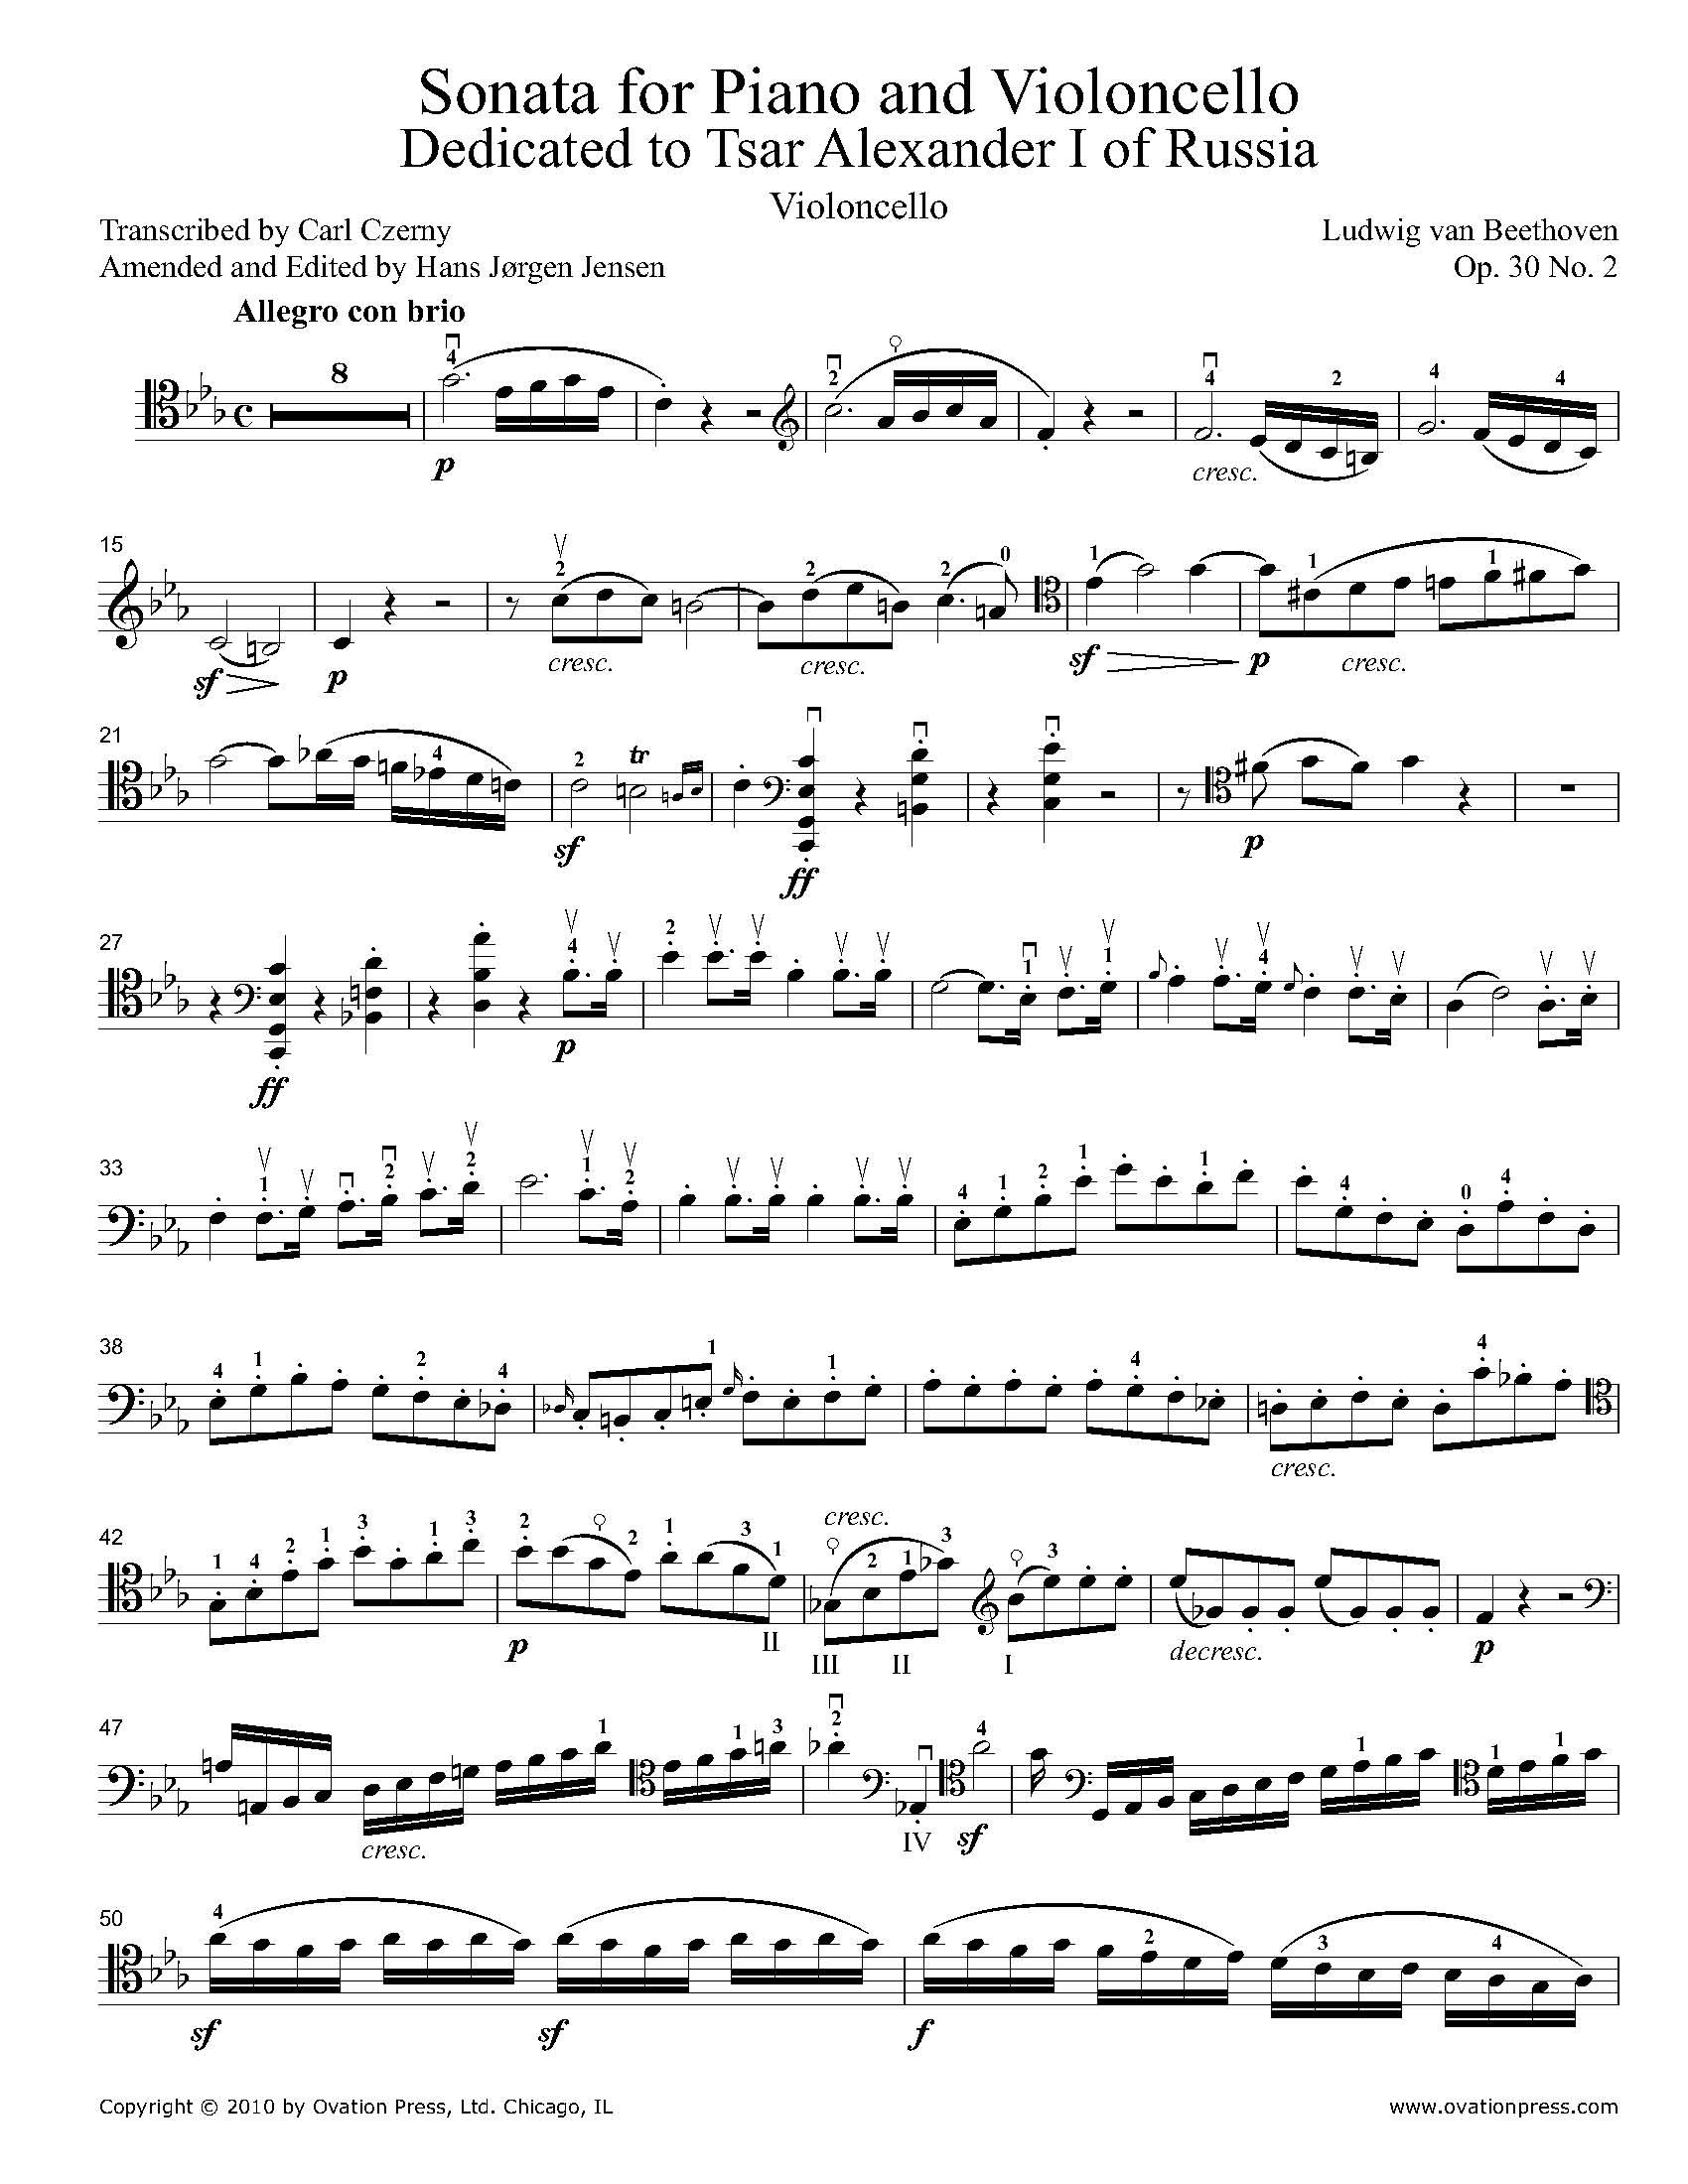 Sonata Op. 30 No. 2